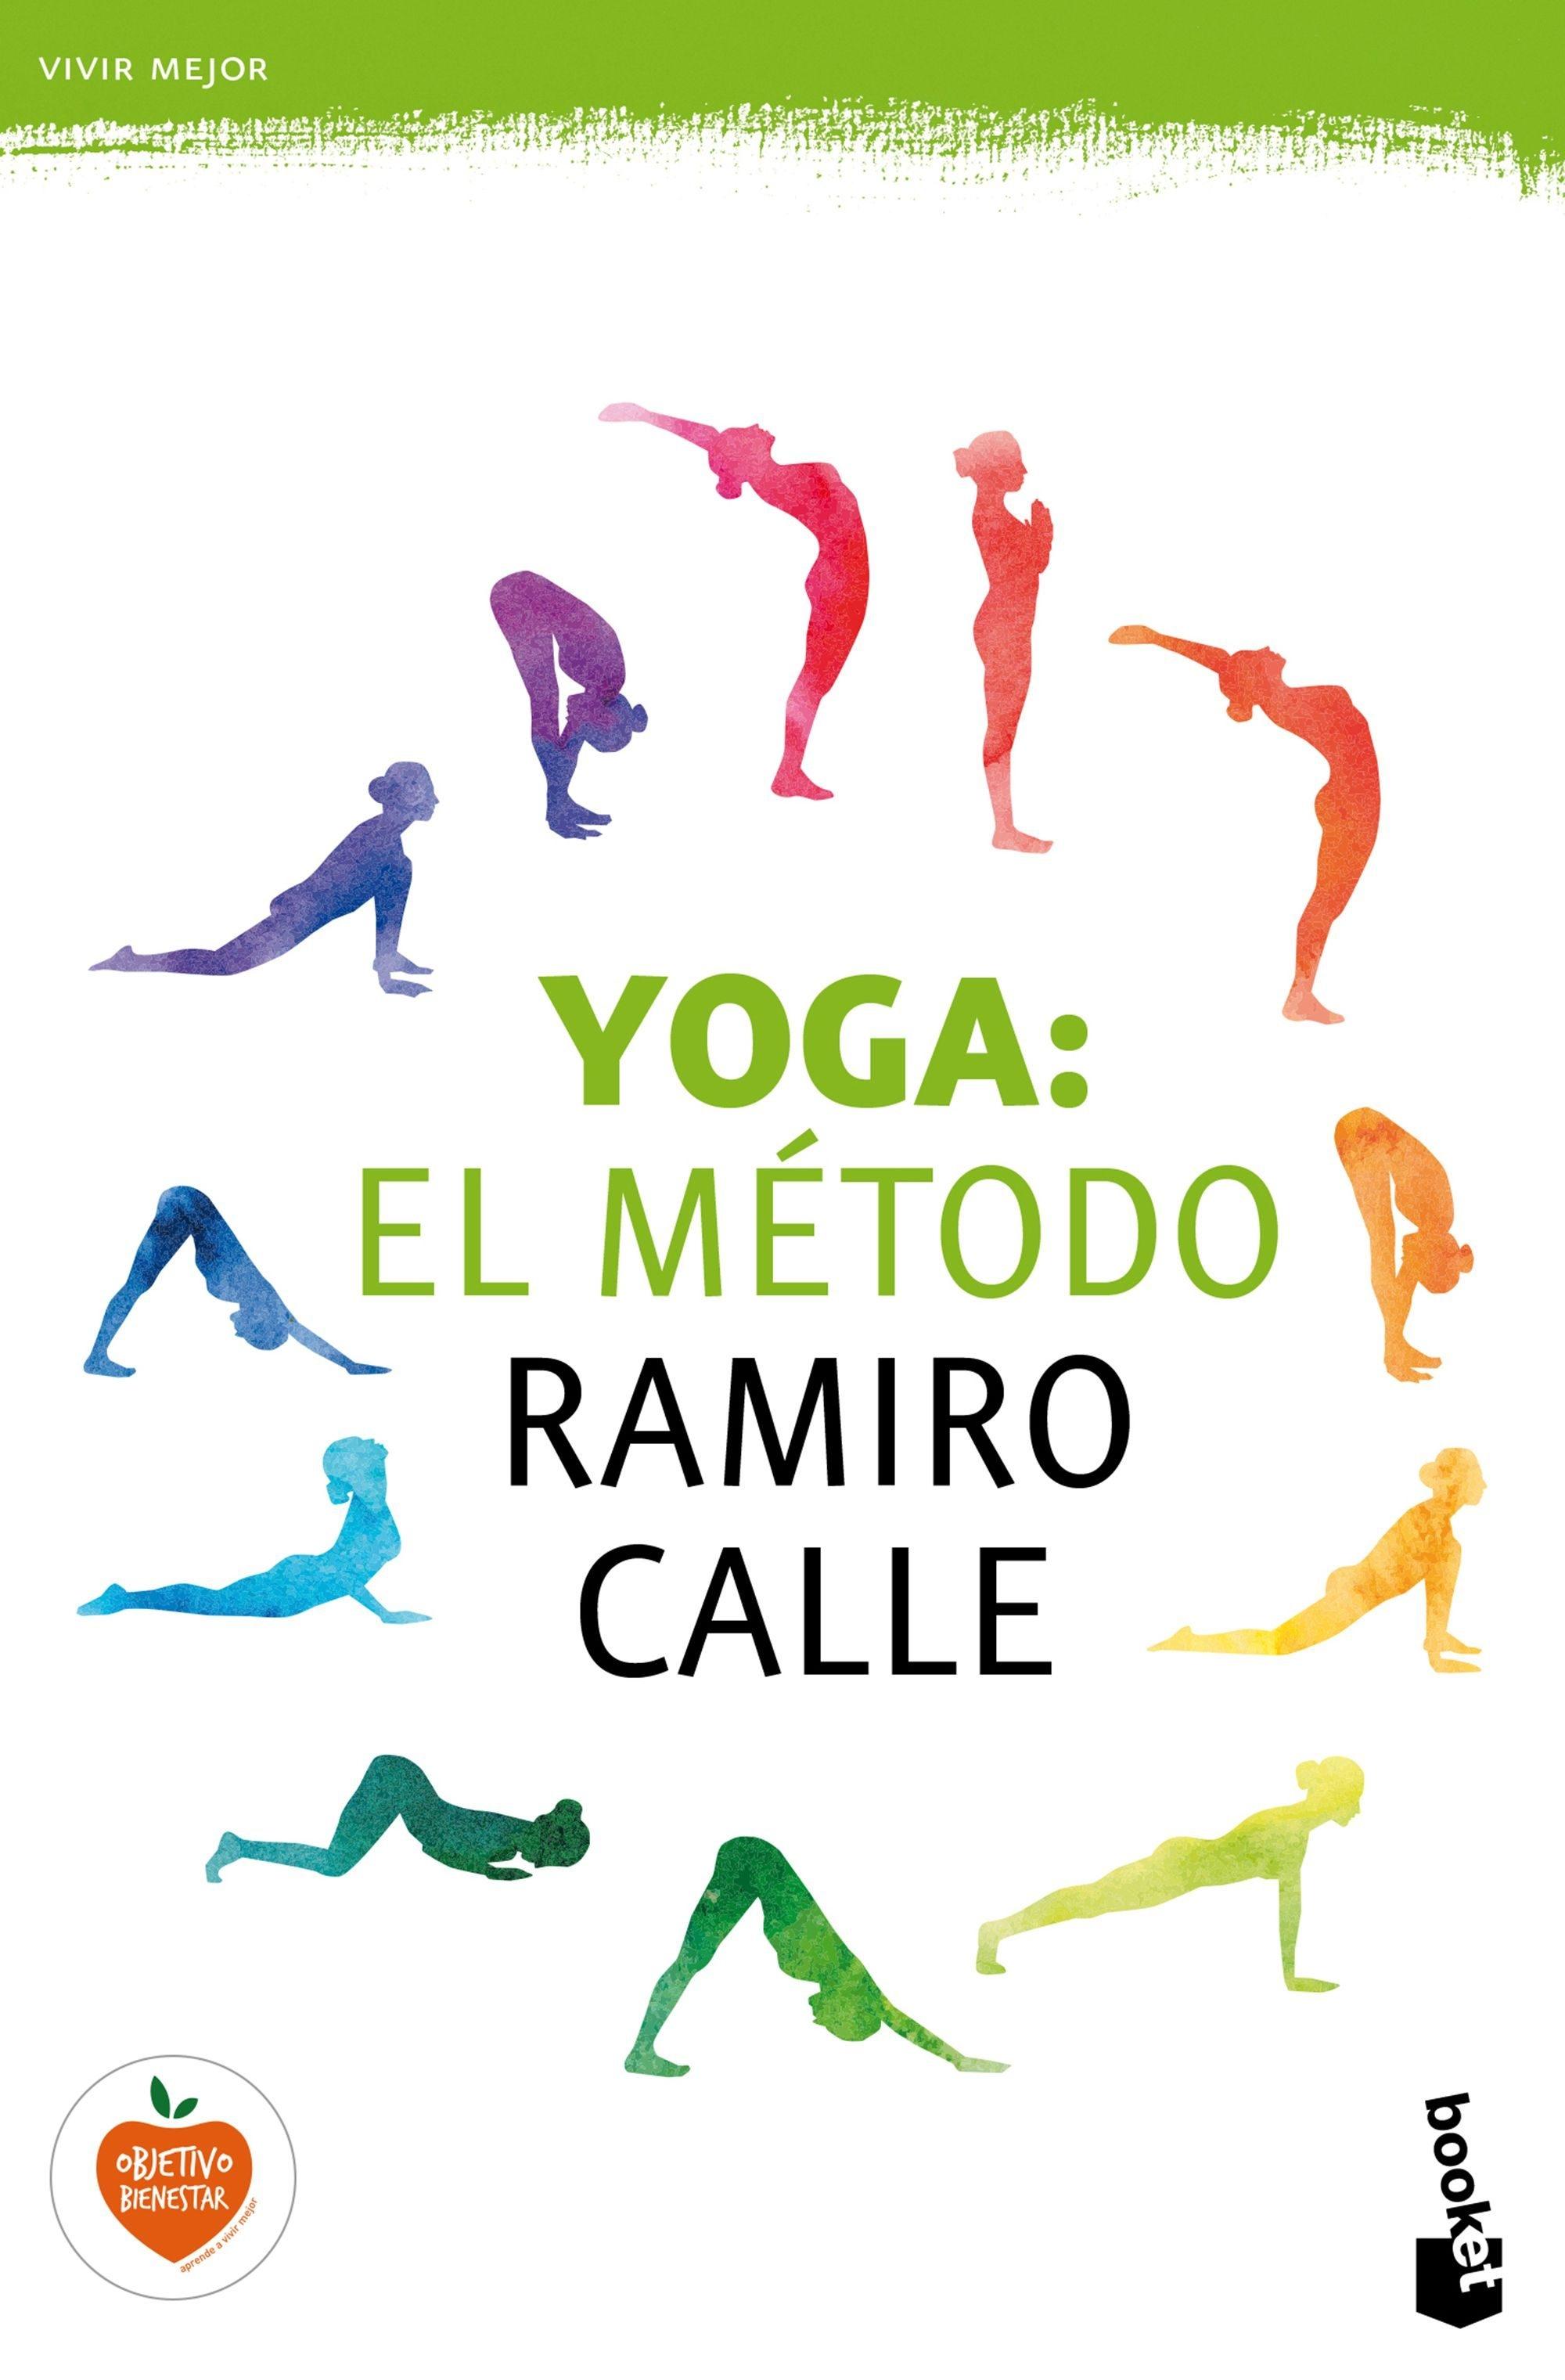 Yoga. El método Ramiro calle. 